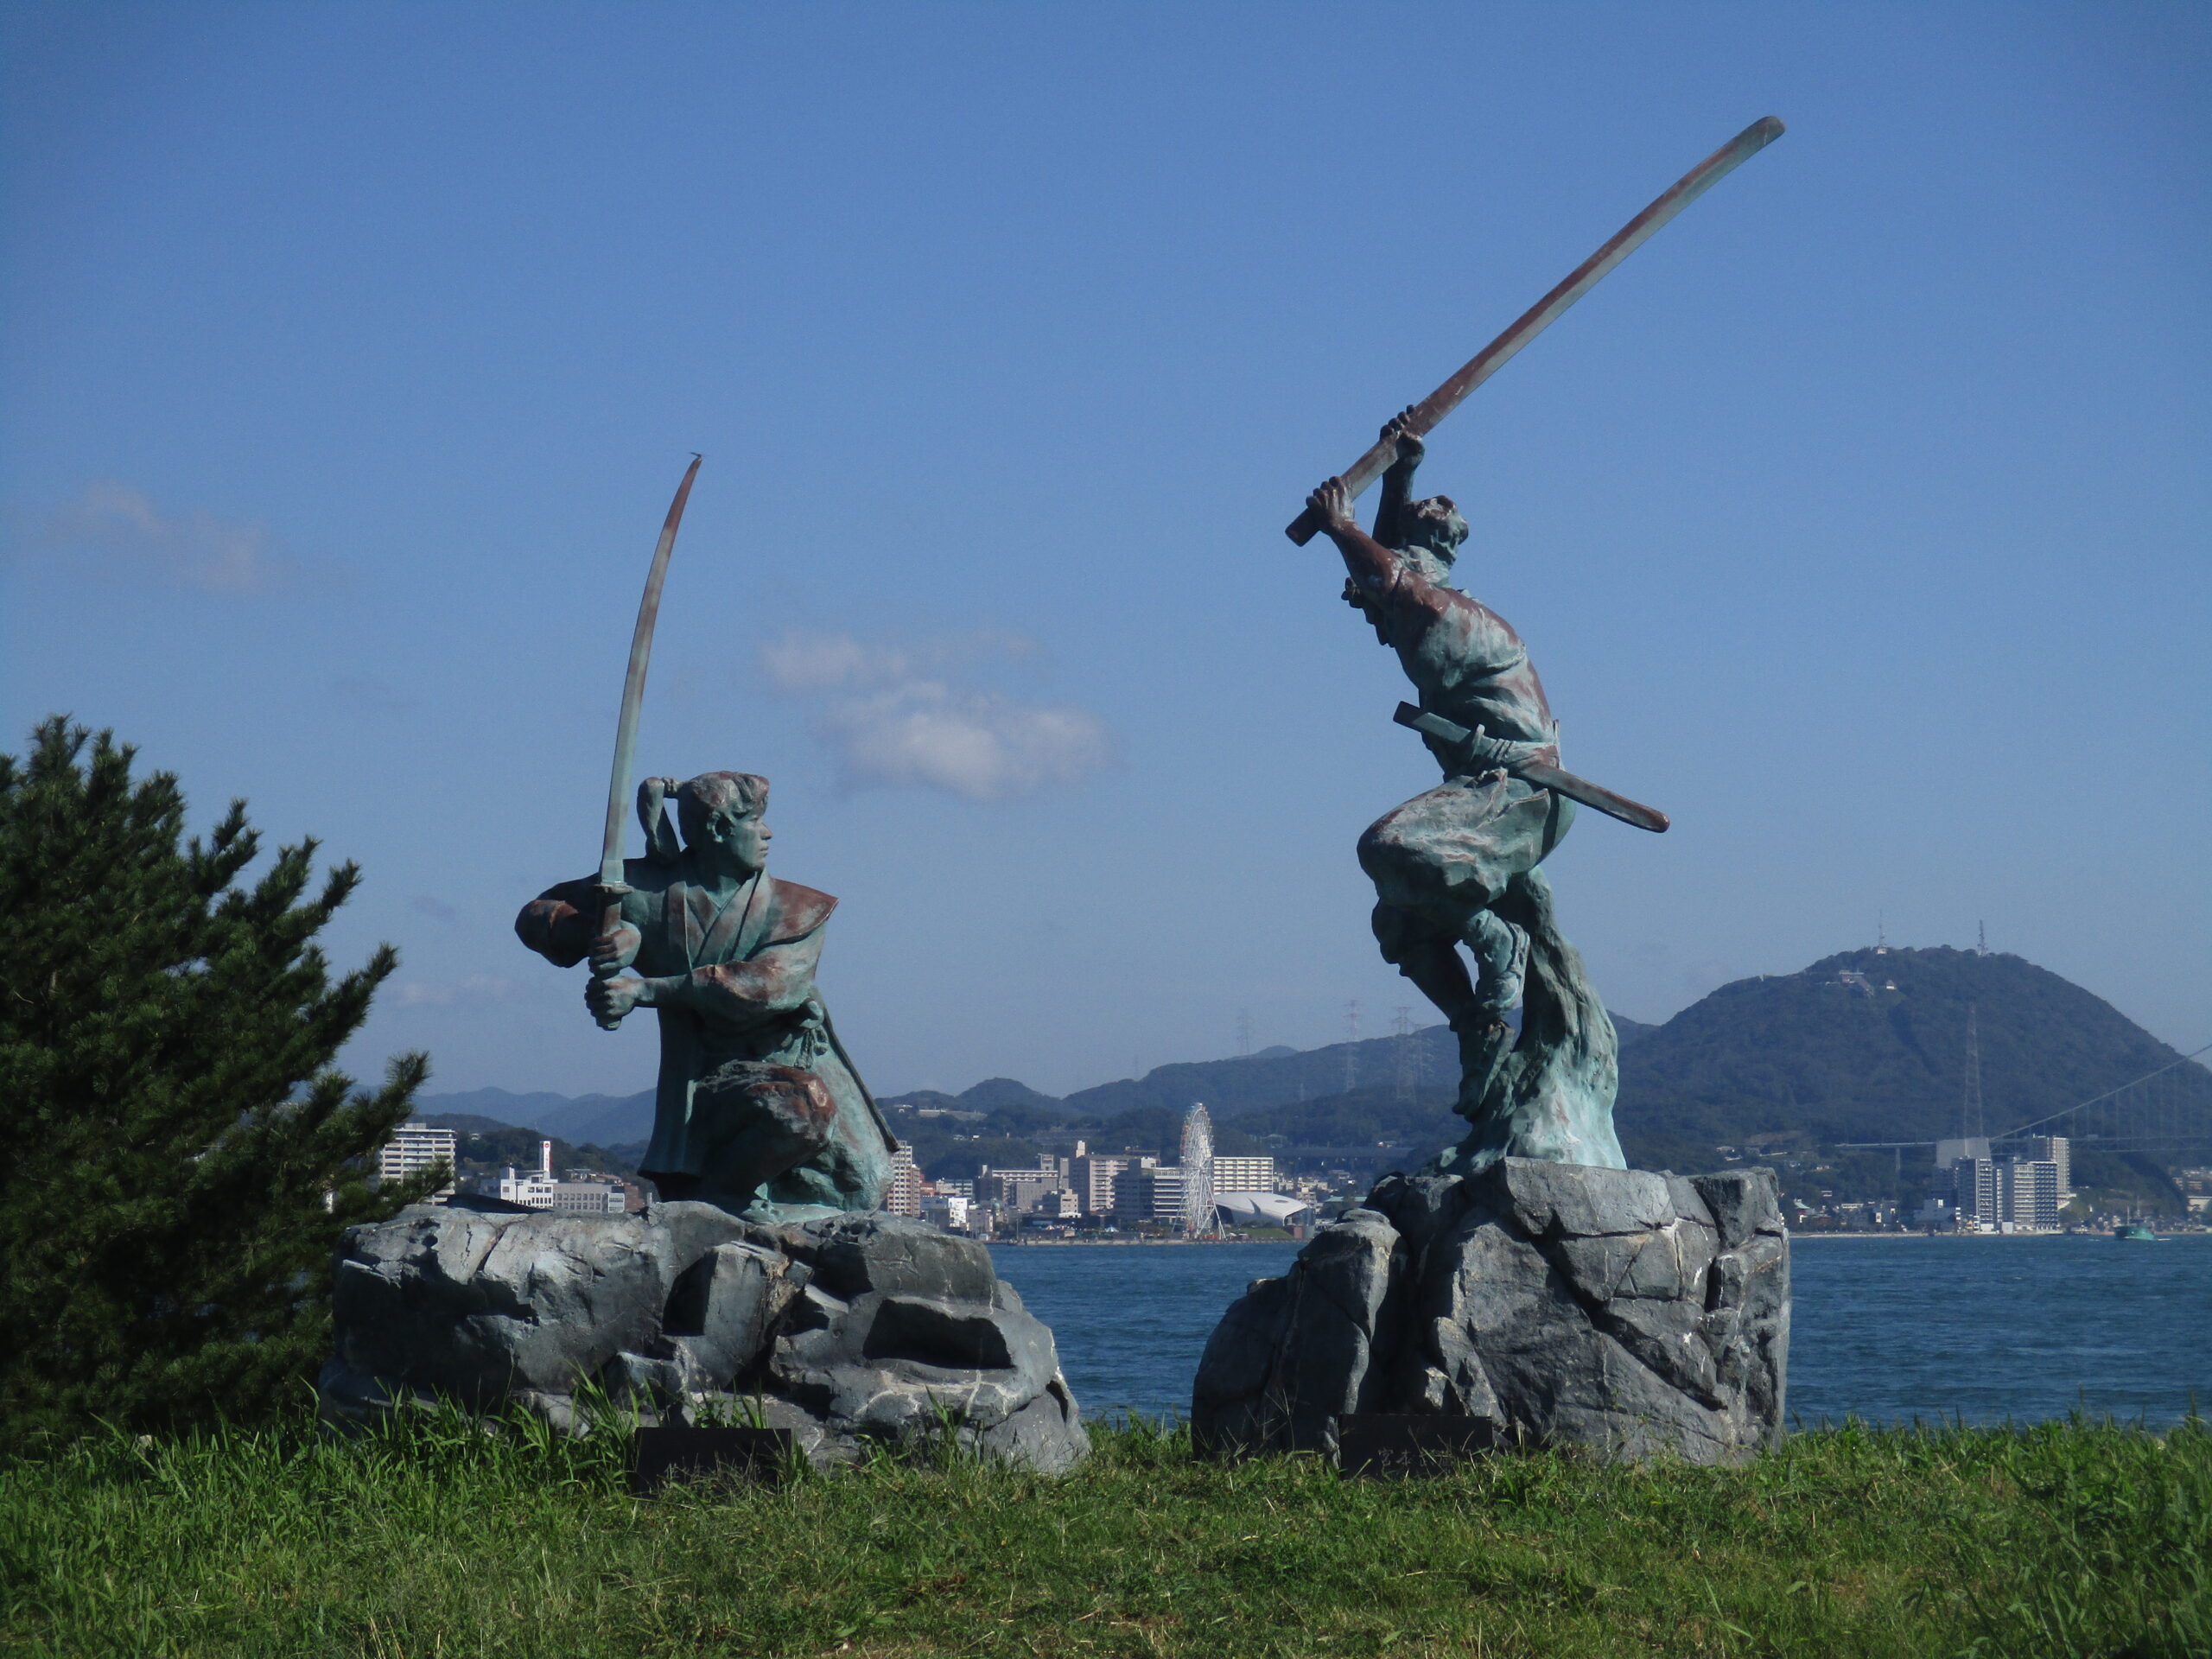 決闘の聖地 を歩いて観光 武蔵 小次郎の戦いの歴史を知る 21年 巌流島旅行記 観光名人旅行記ブログ